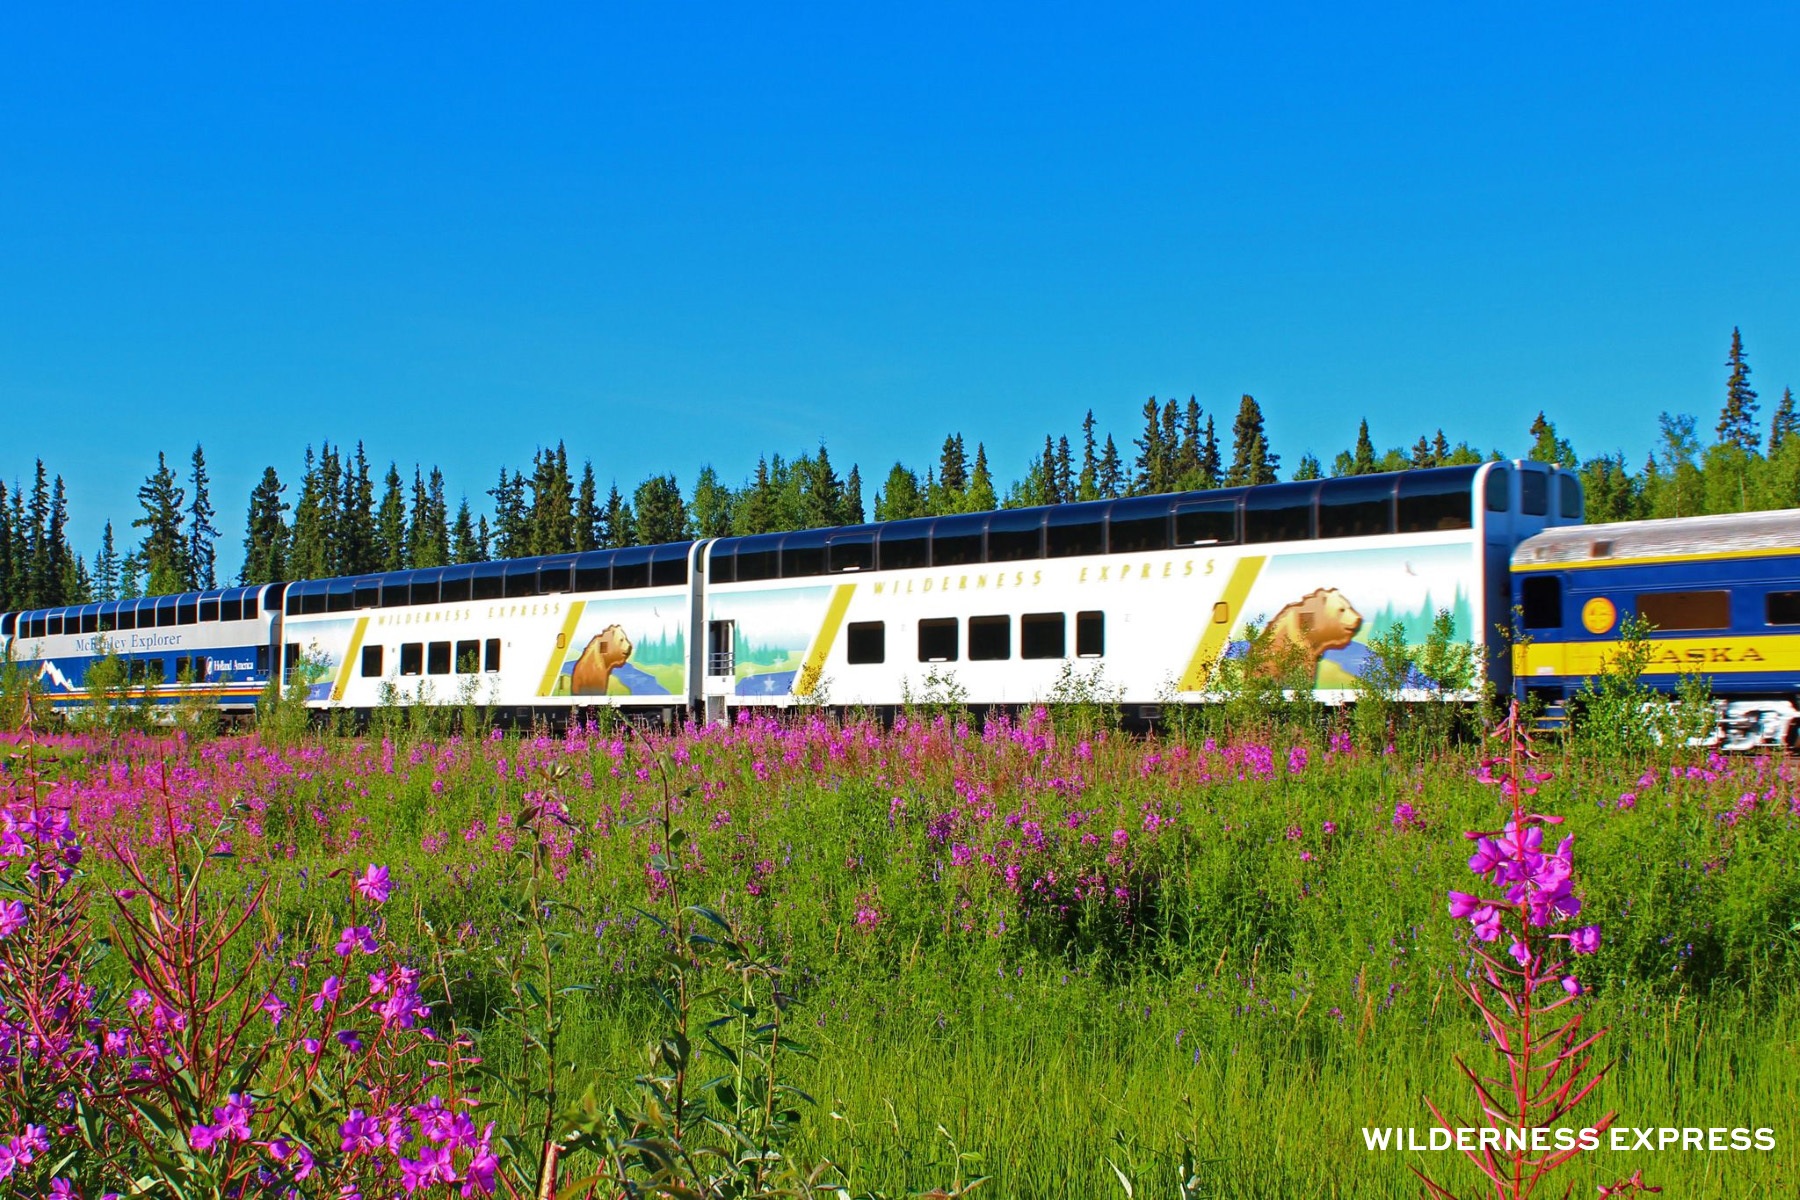 Alaska Railroad Train Experience